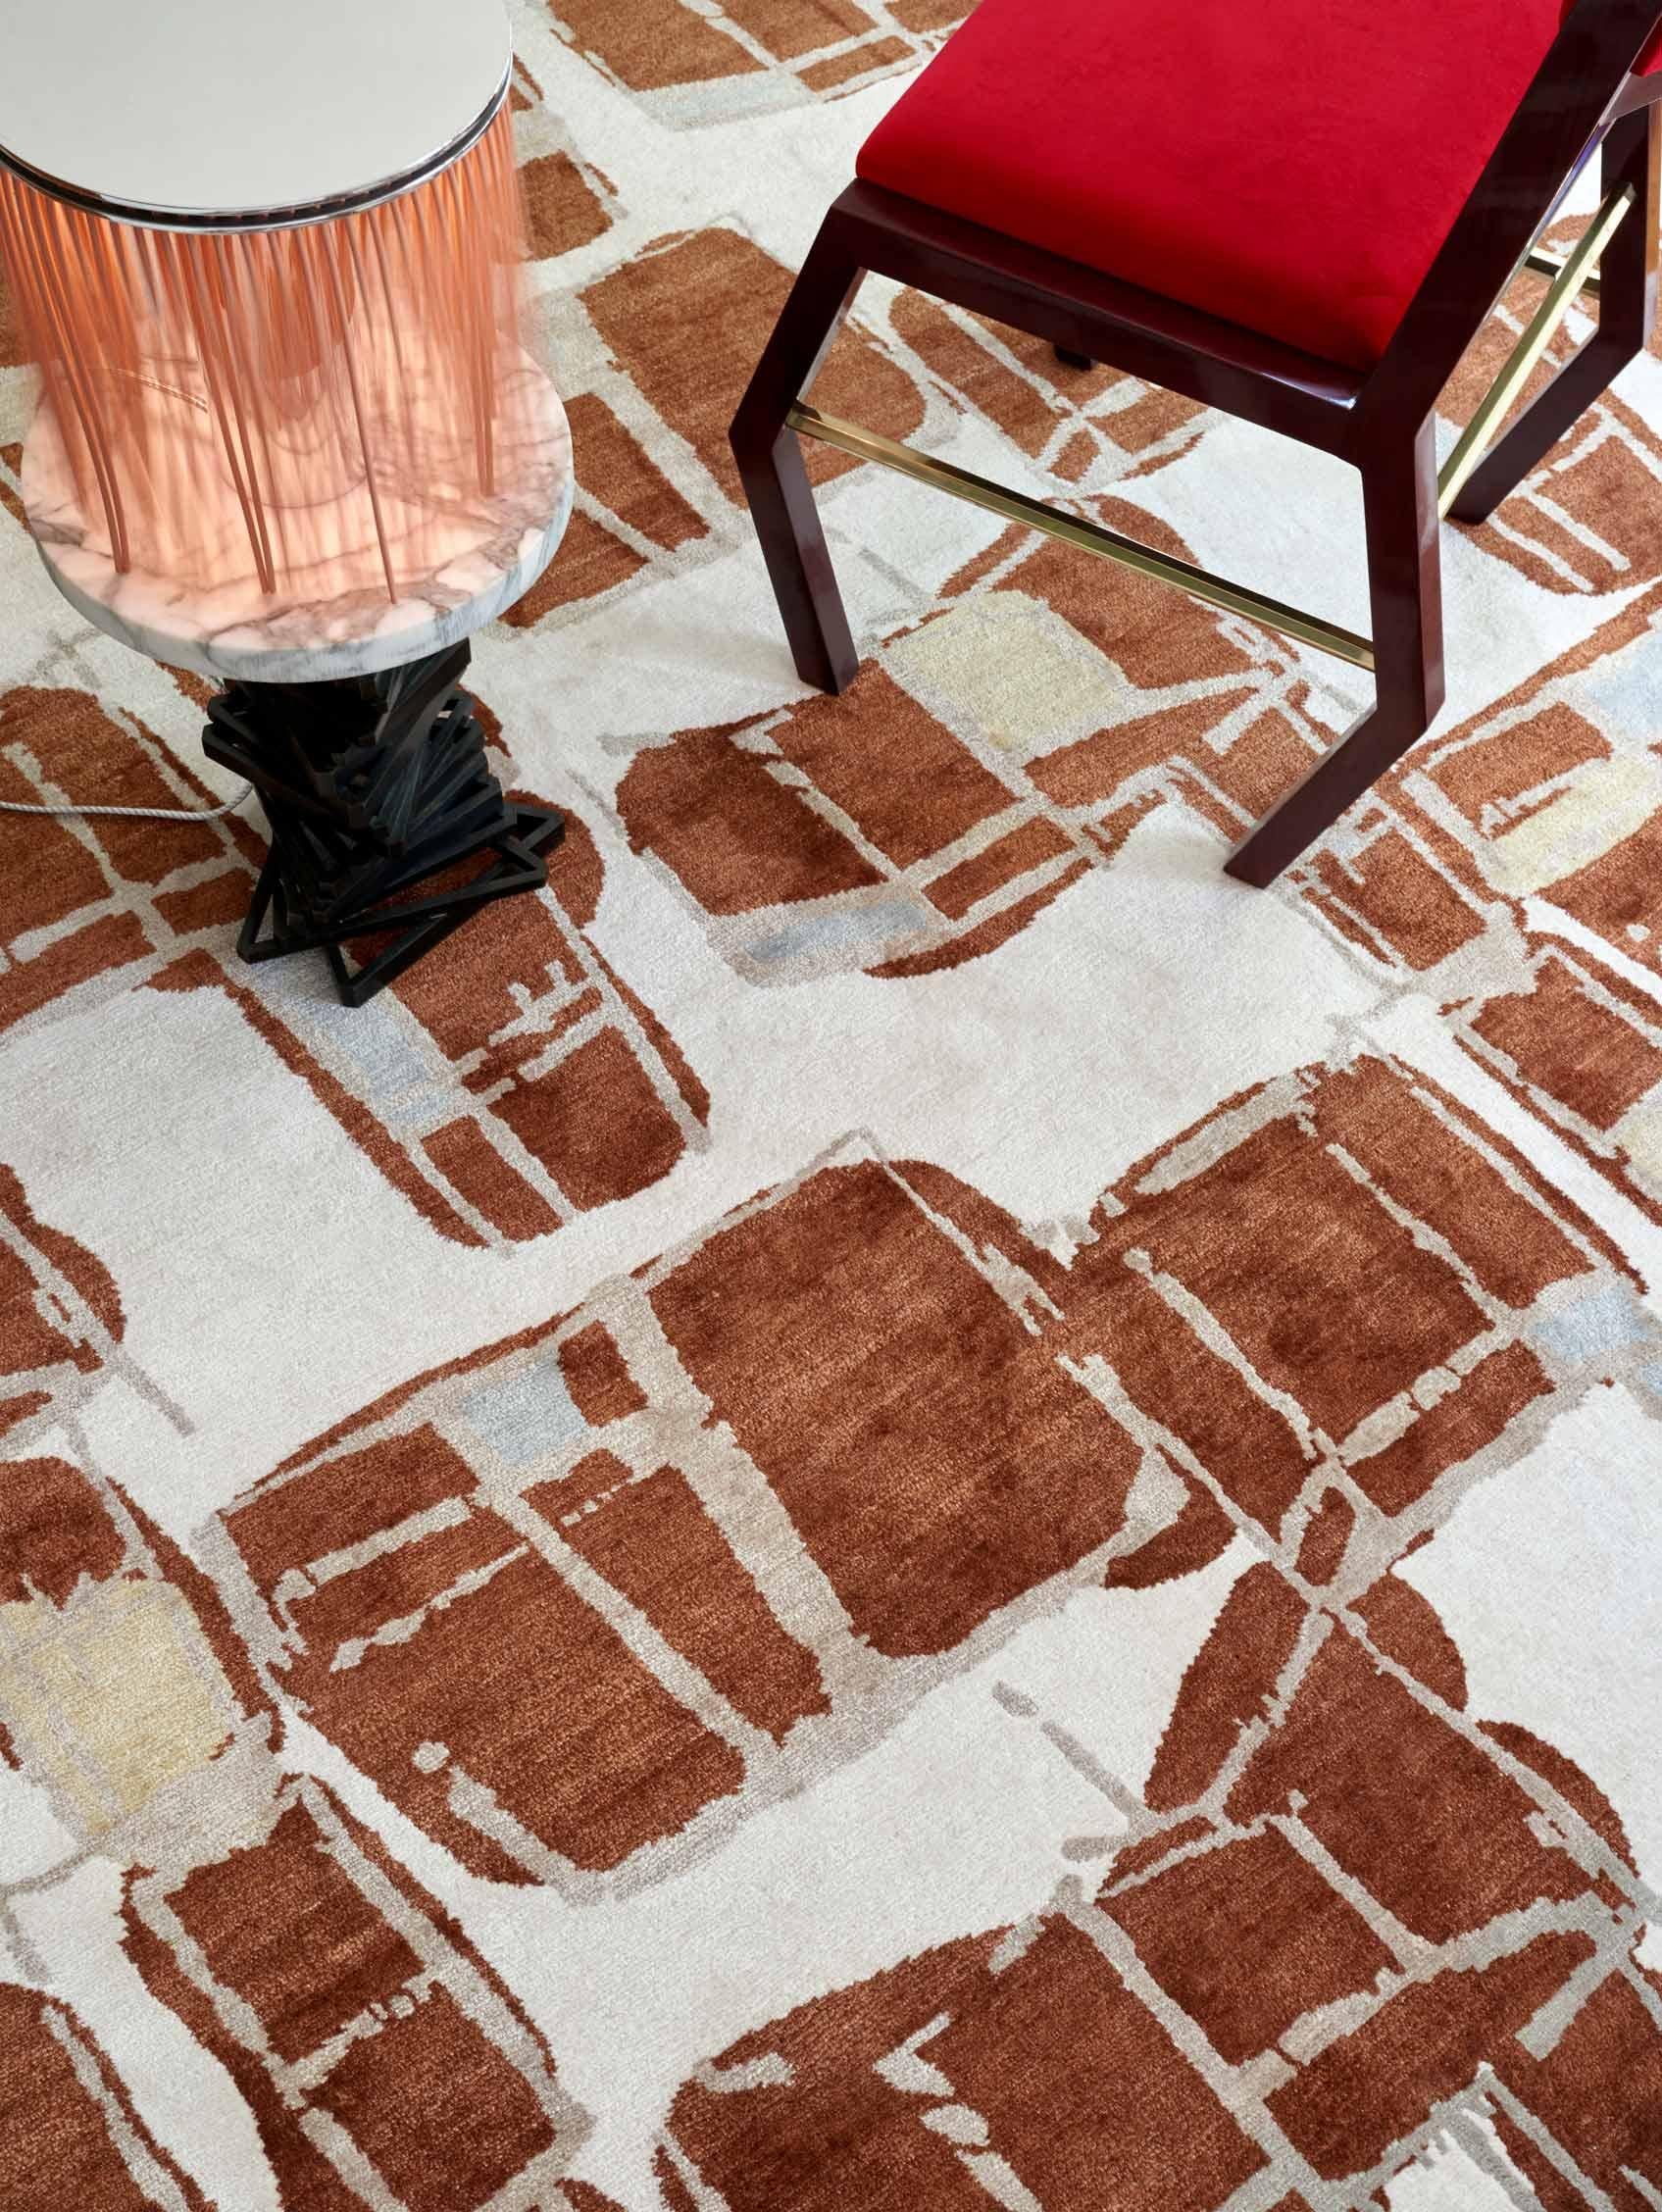 Muster des Teppichs: Quotidiana - Gebrannte Siena
MATERIAL: 70% Matkaseide / 30% Neuseeländische Wolle
Qualität: Tibetisches Kreuzgeflecht, handgewebt 
Größe: 9'-0